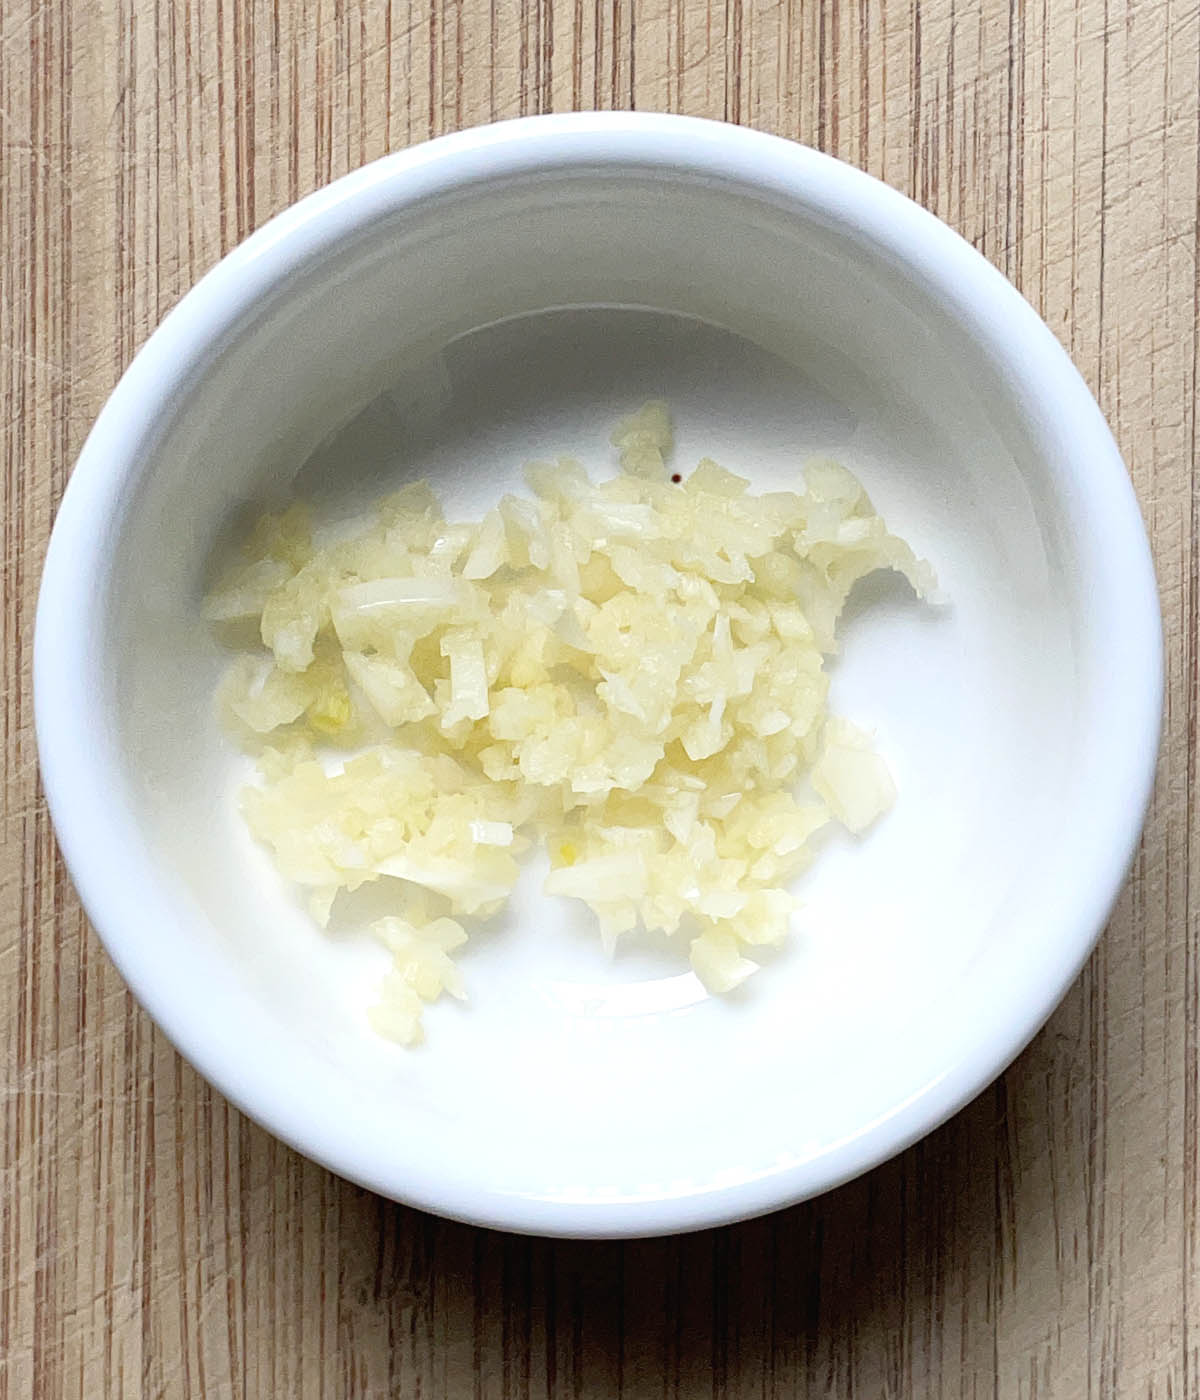 Minced garlic in a round white dish.